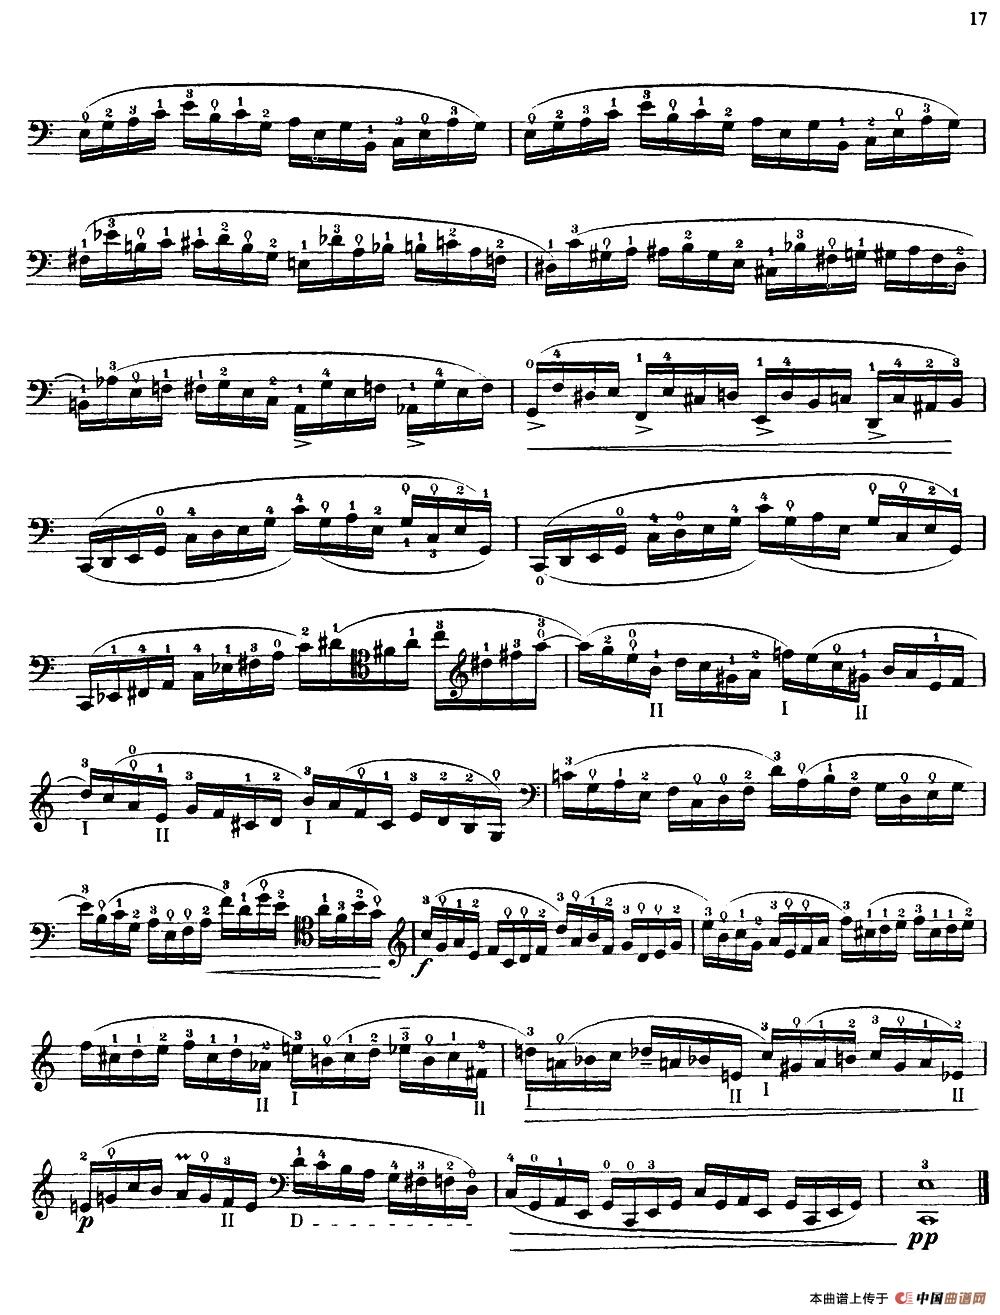 大提琴高级练习曲40首 No.8小提琴谱